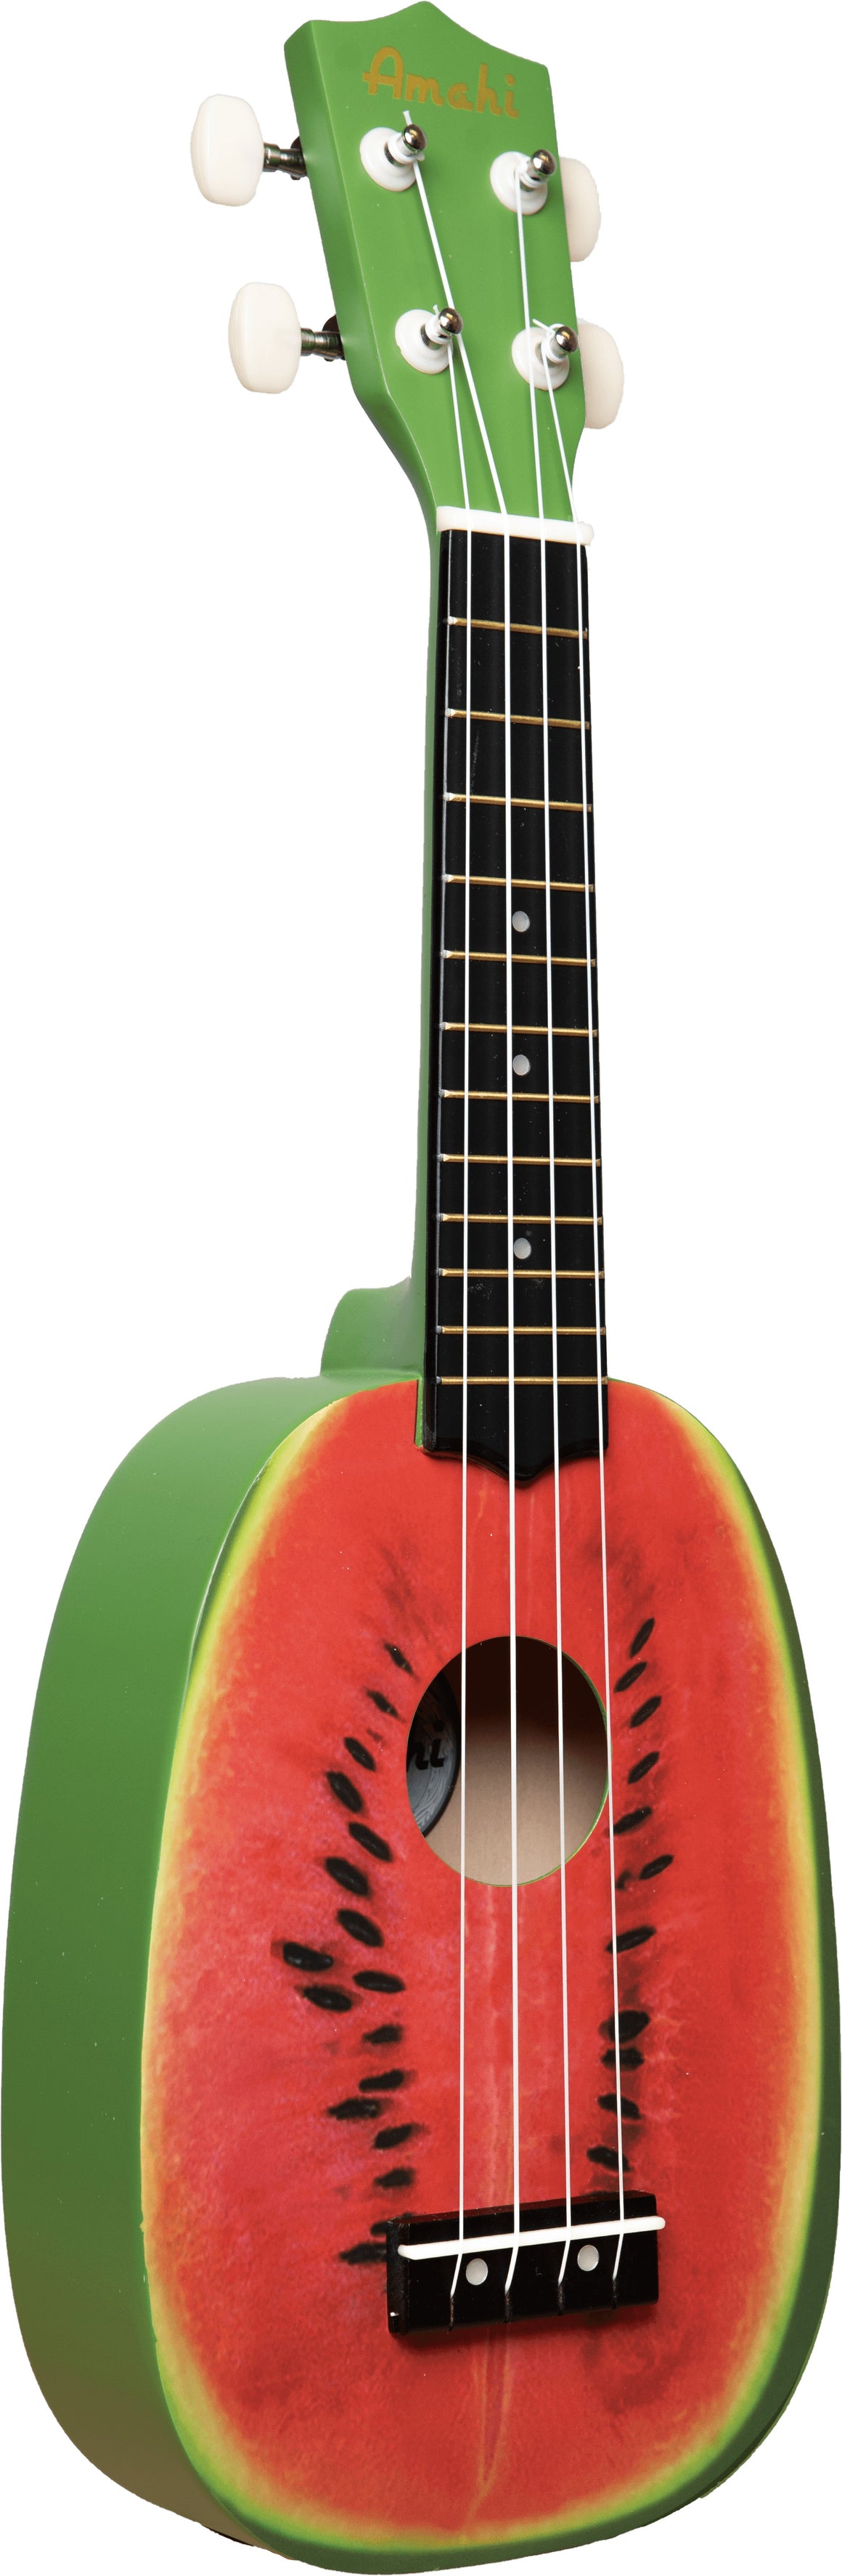 Amahi DDUK17 Watermelon Design Pineapple Shape Ukulele w/ Bag